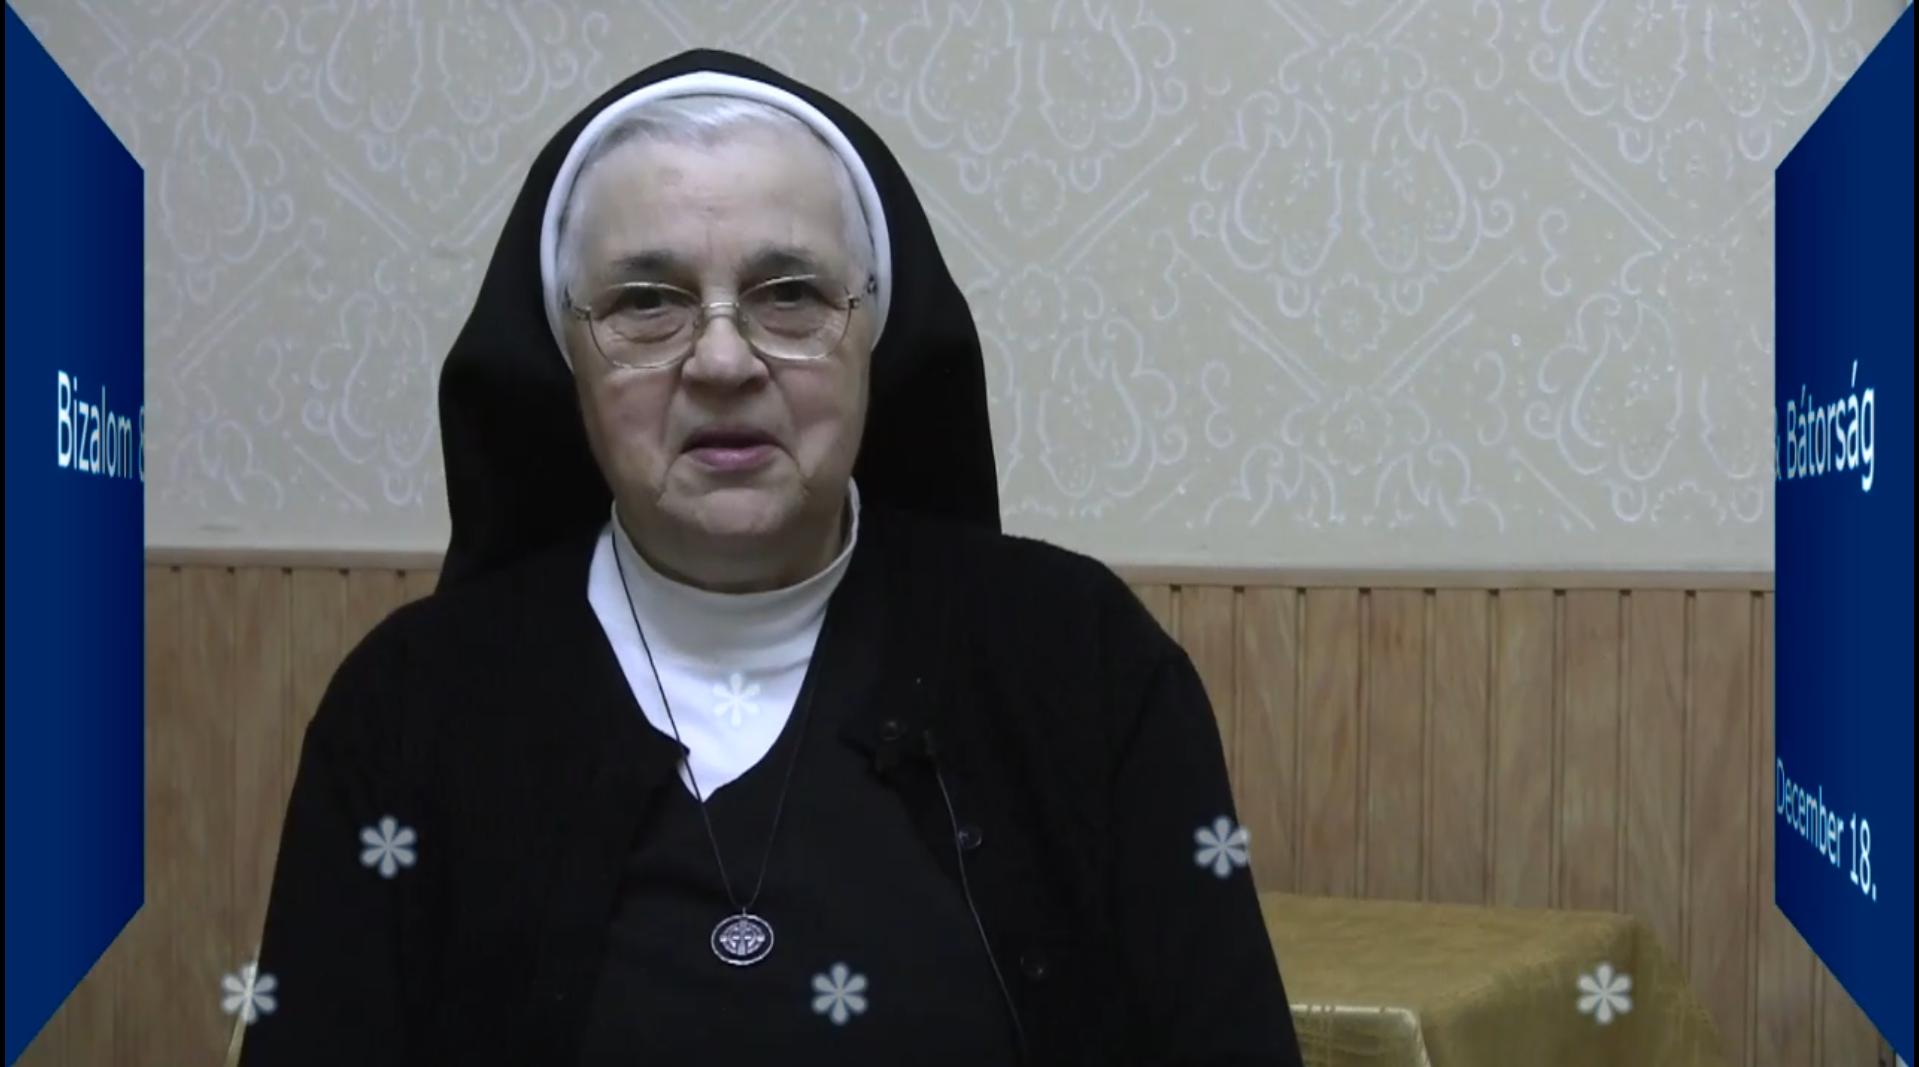 December 18. M. Bernadette nővér gondolatai - Egész életünk egy advent 1. rész